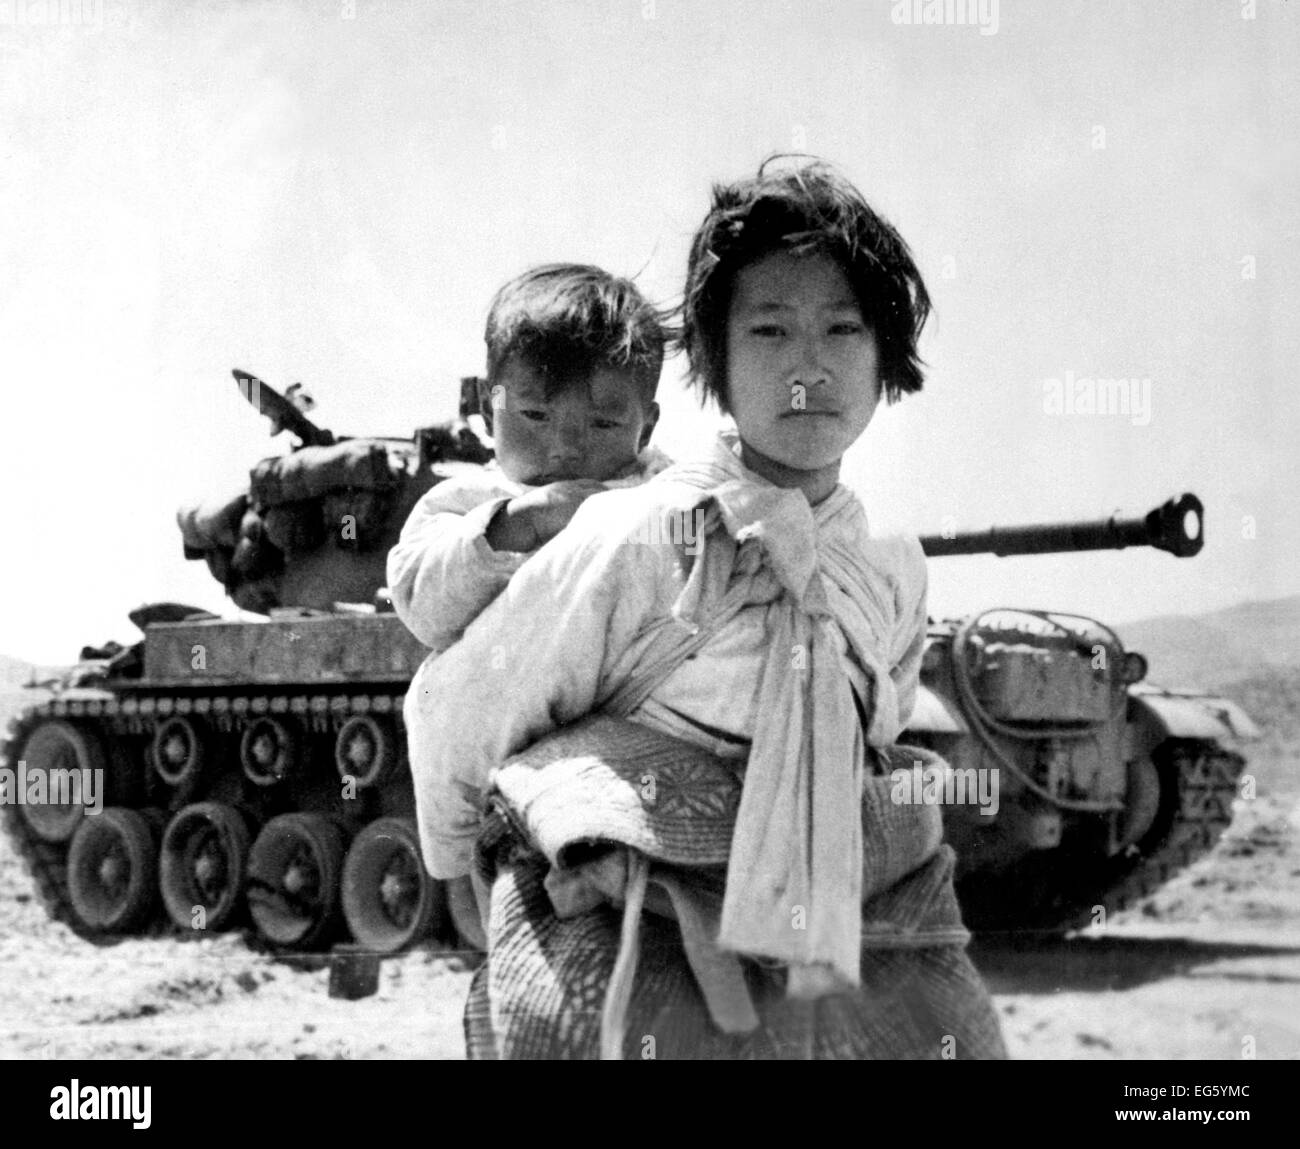 Guerre de Corée (1950-1953) avec son frère sur son dos une fille coréenne fatigué, las de la guerre trudges par un M-26 tank, à Haengju, Corée. Le 9 juin 1951. Photo : Le Major R.V. Spencer, l'UAF. (Marine) LA GUERRE ET CONFLIT D'ADRESSES #  : 1485 Banque D'Images